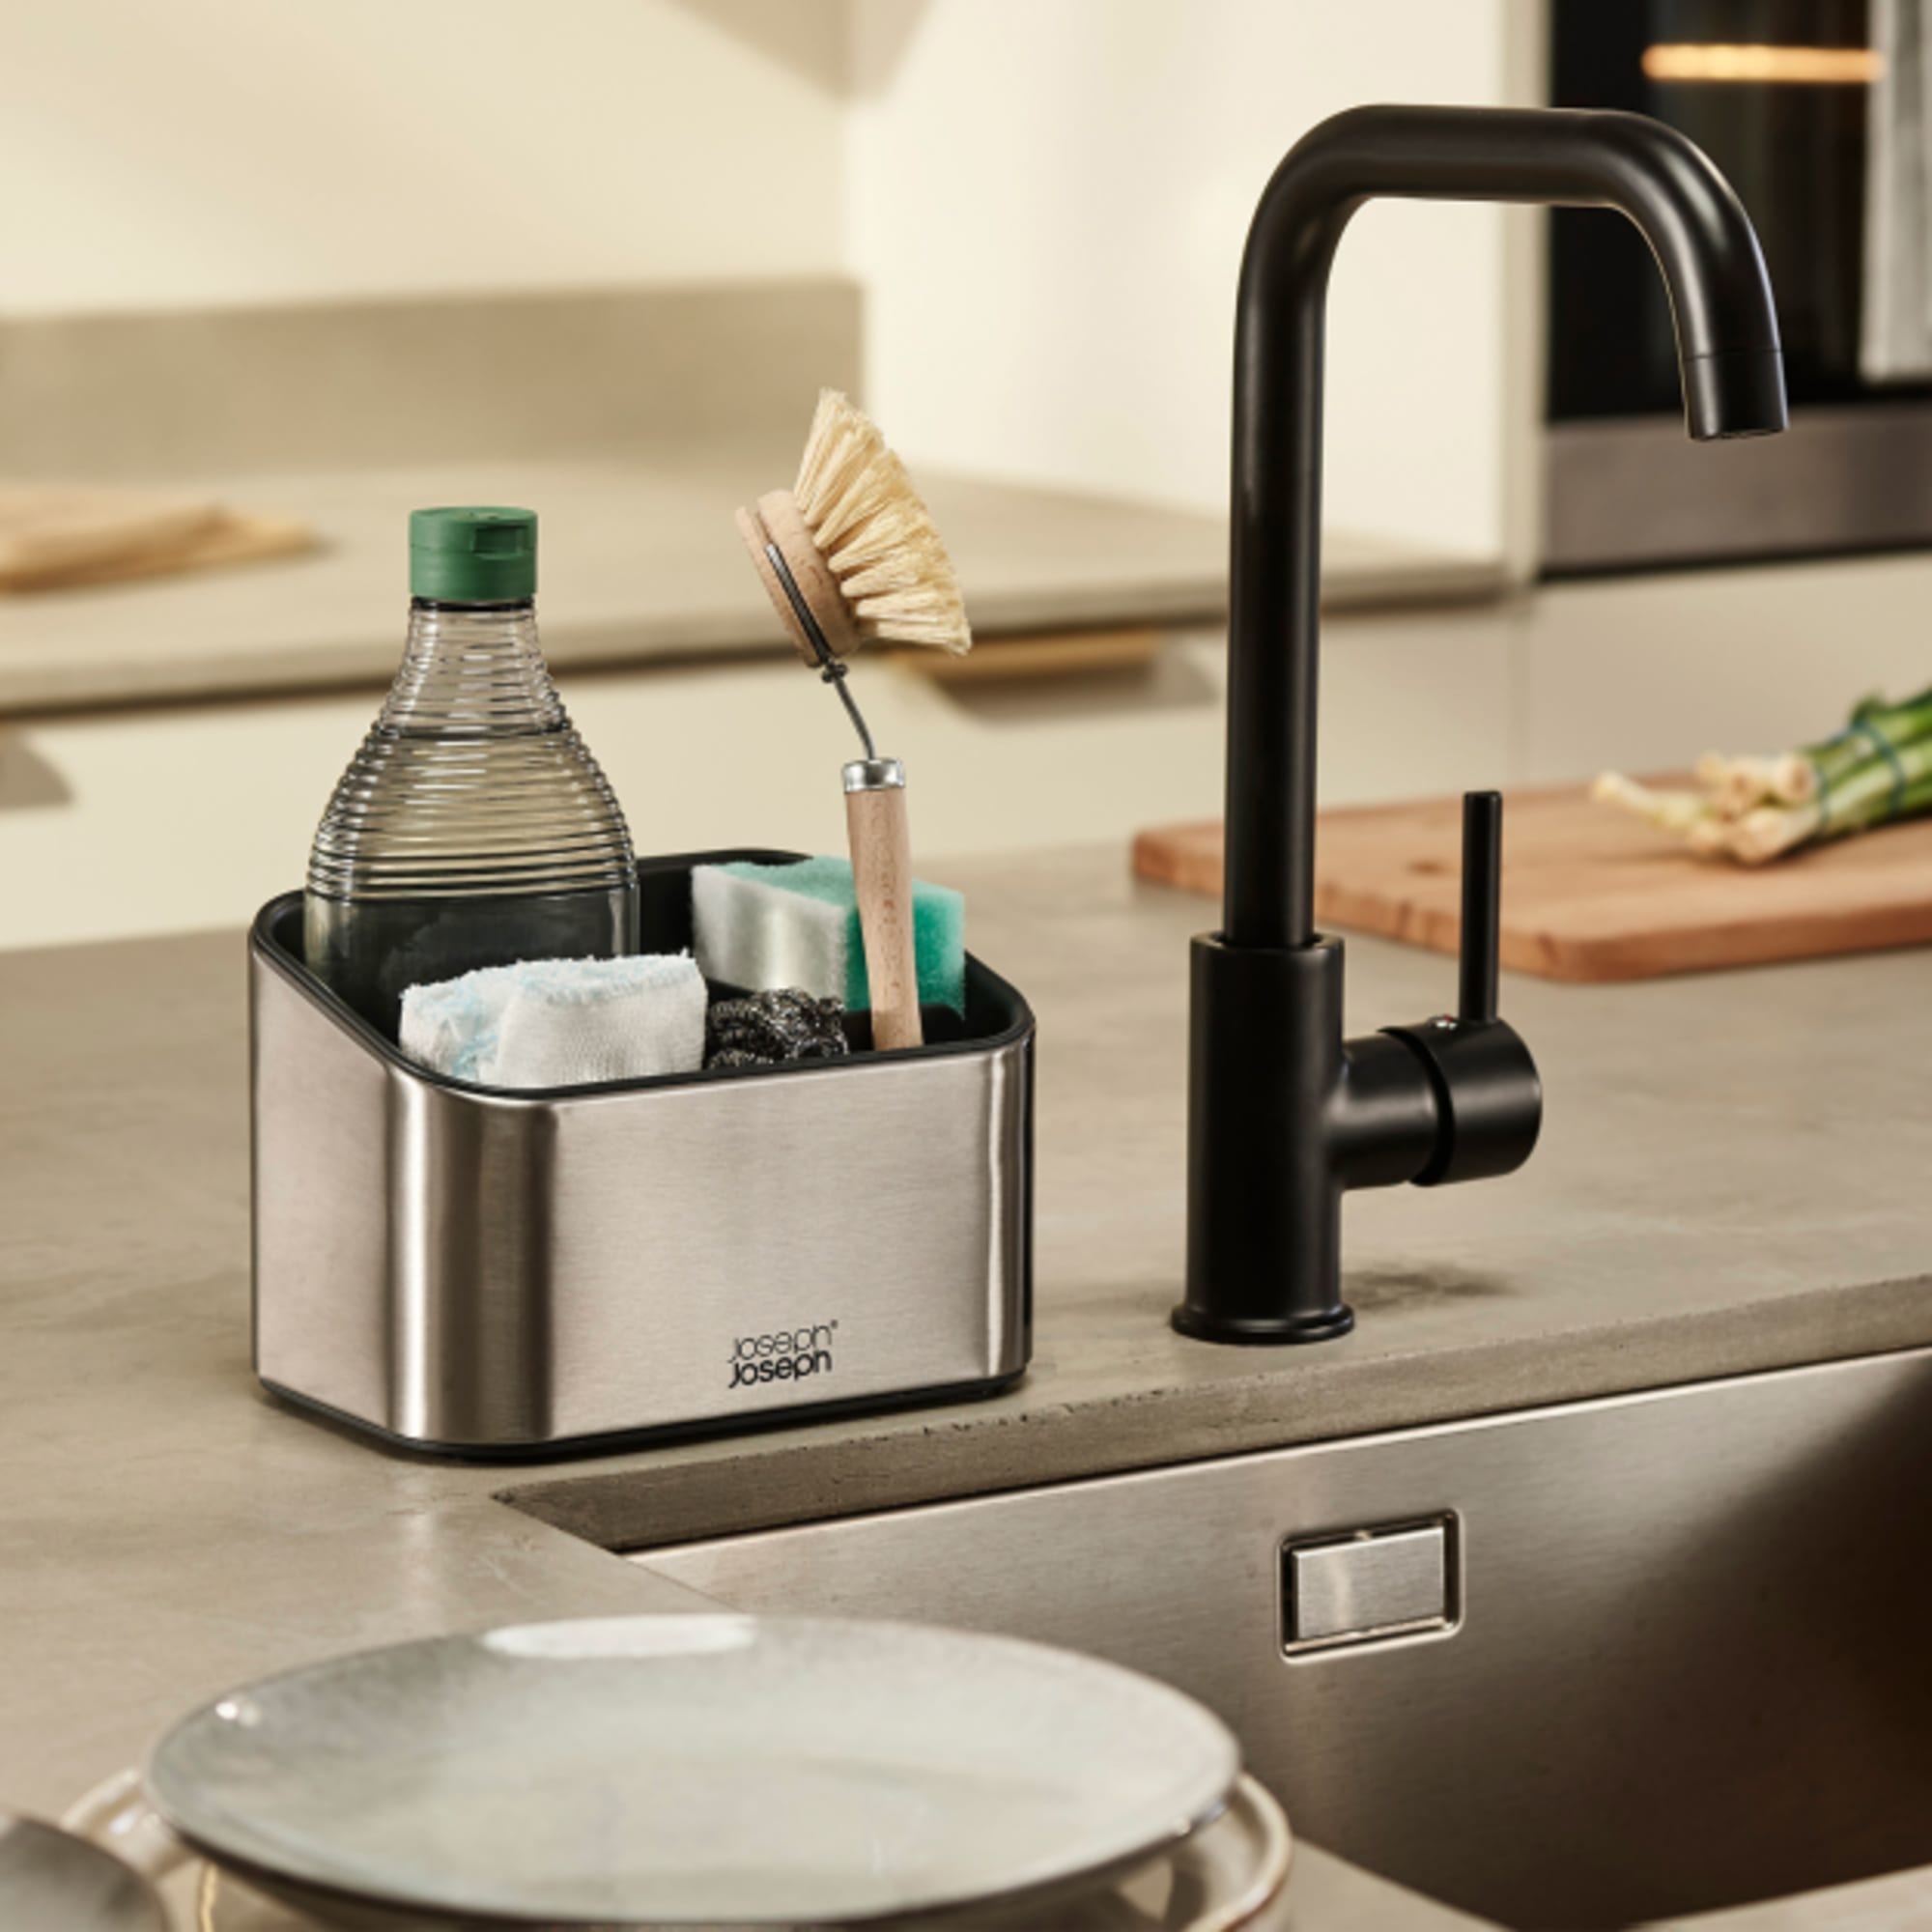 TidySink - Adjustable Kitchen Sink Organizer – Ares